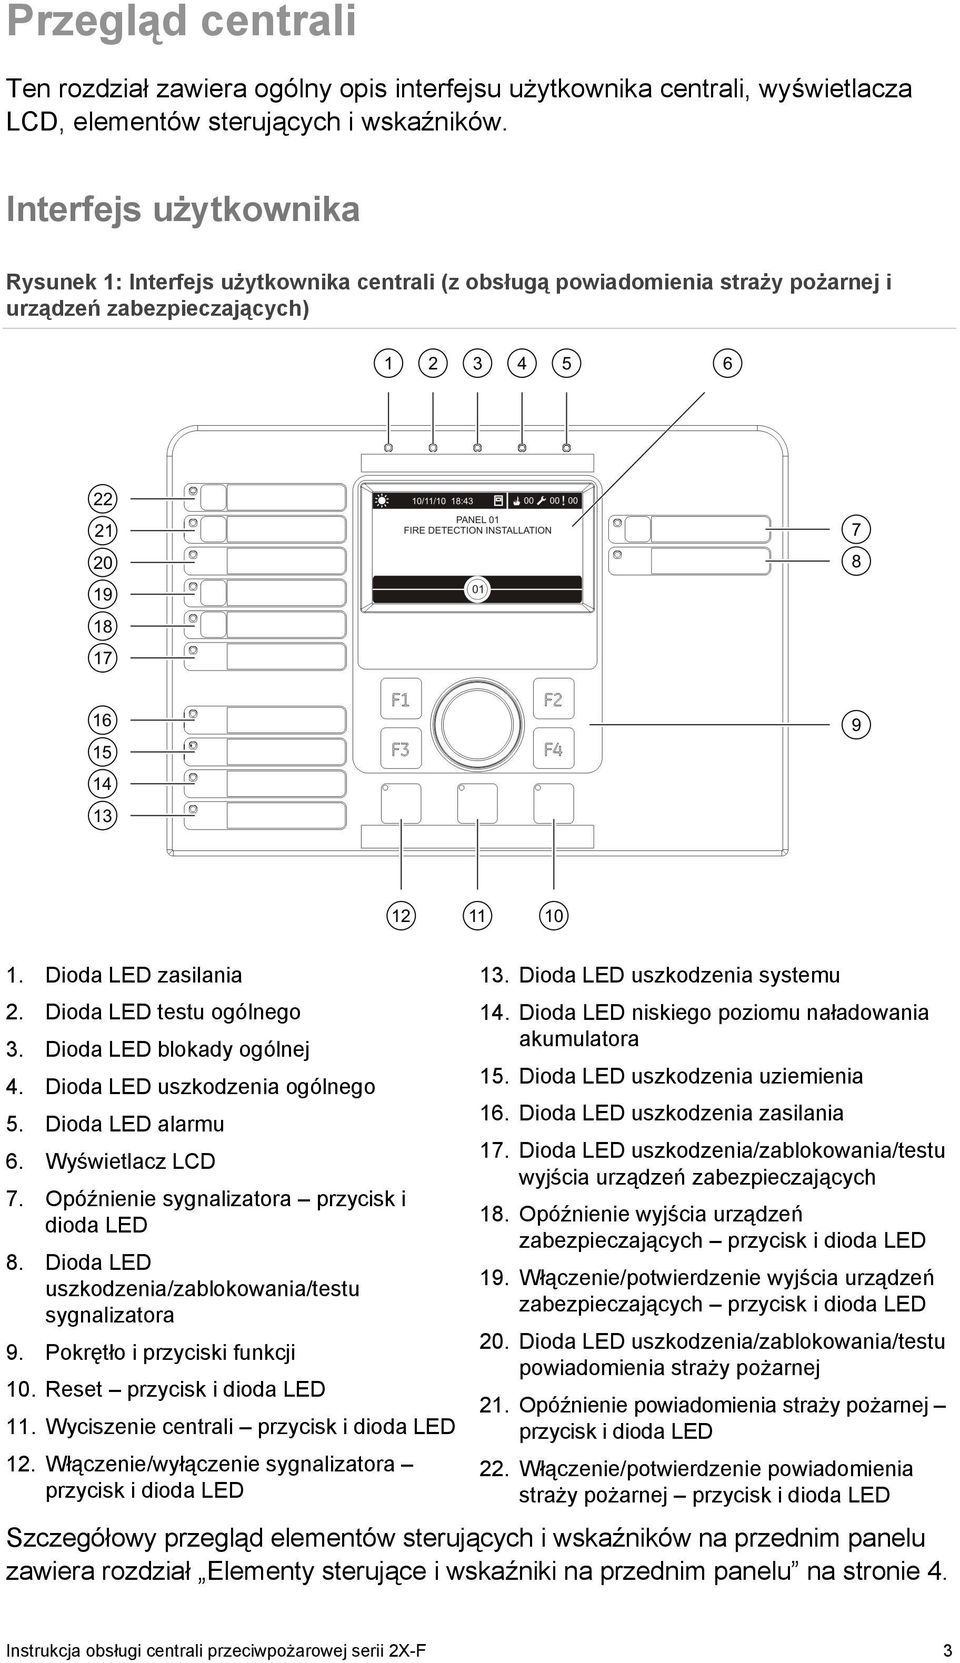 Dioda LED blokady ogólnej 4. Dioda LED uszkodzenia ogólnego 5. Dioda LED alarmu 6. Wyświetlacz LCD 7. Opóźnienie sygnalizatora przycisk i dioda LED 8.